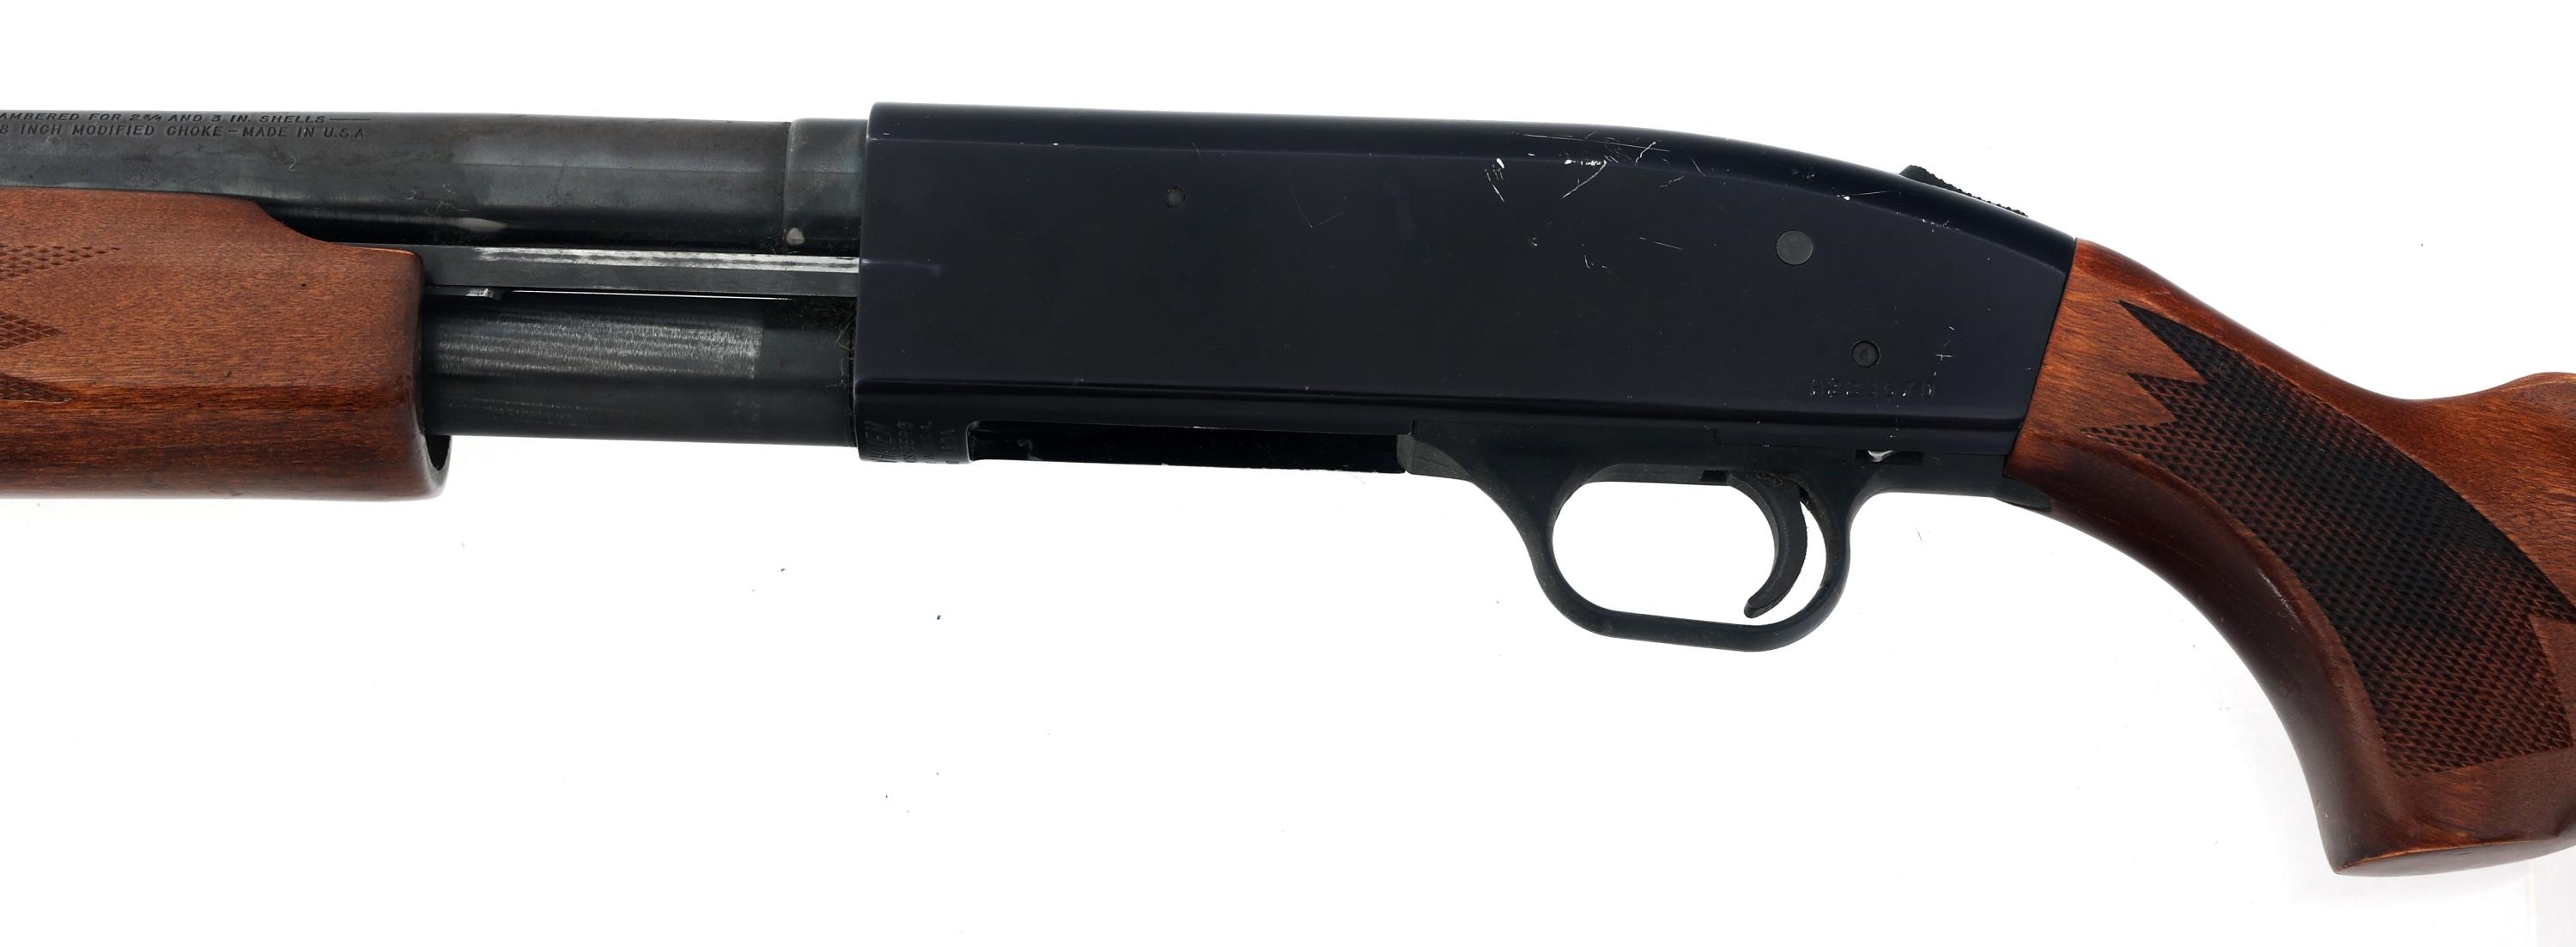 MOSSBERG NEW HAVEN MODEL 600AT 12 GAUGE SHOTGUN